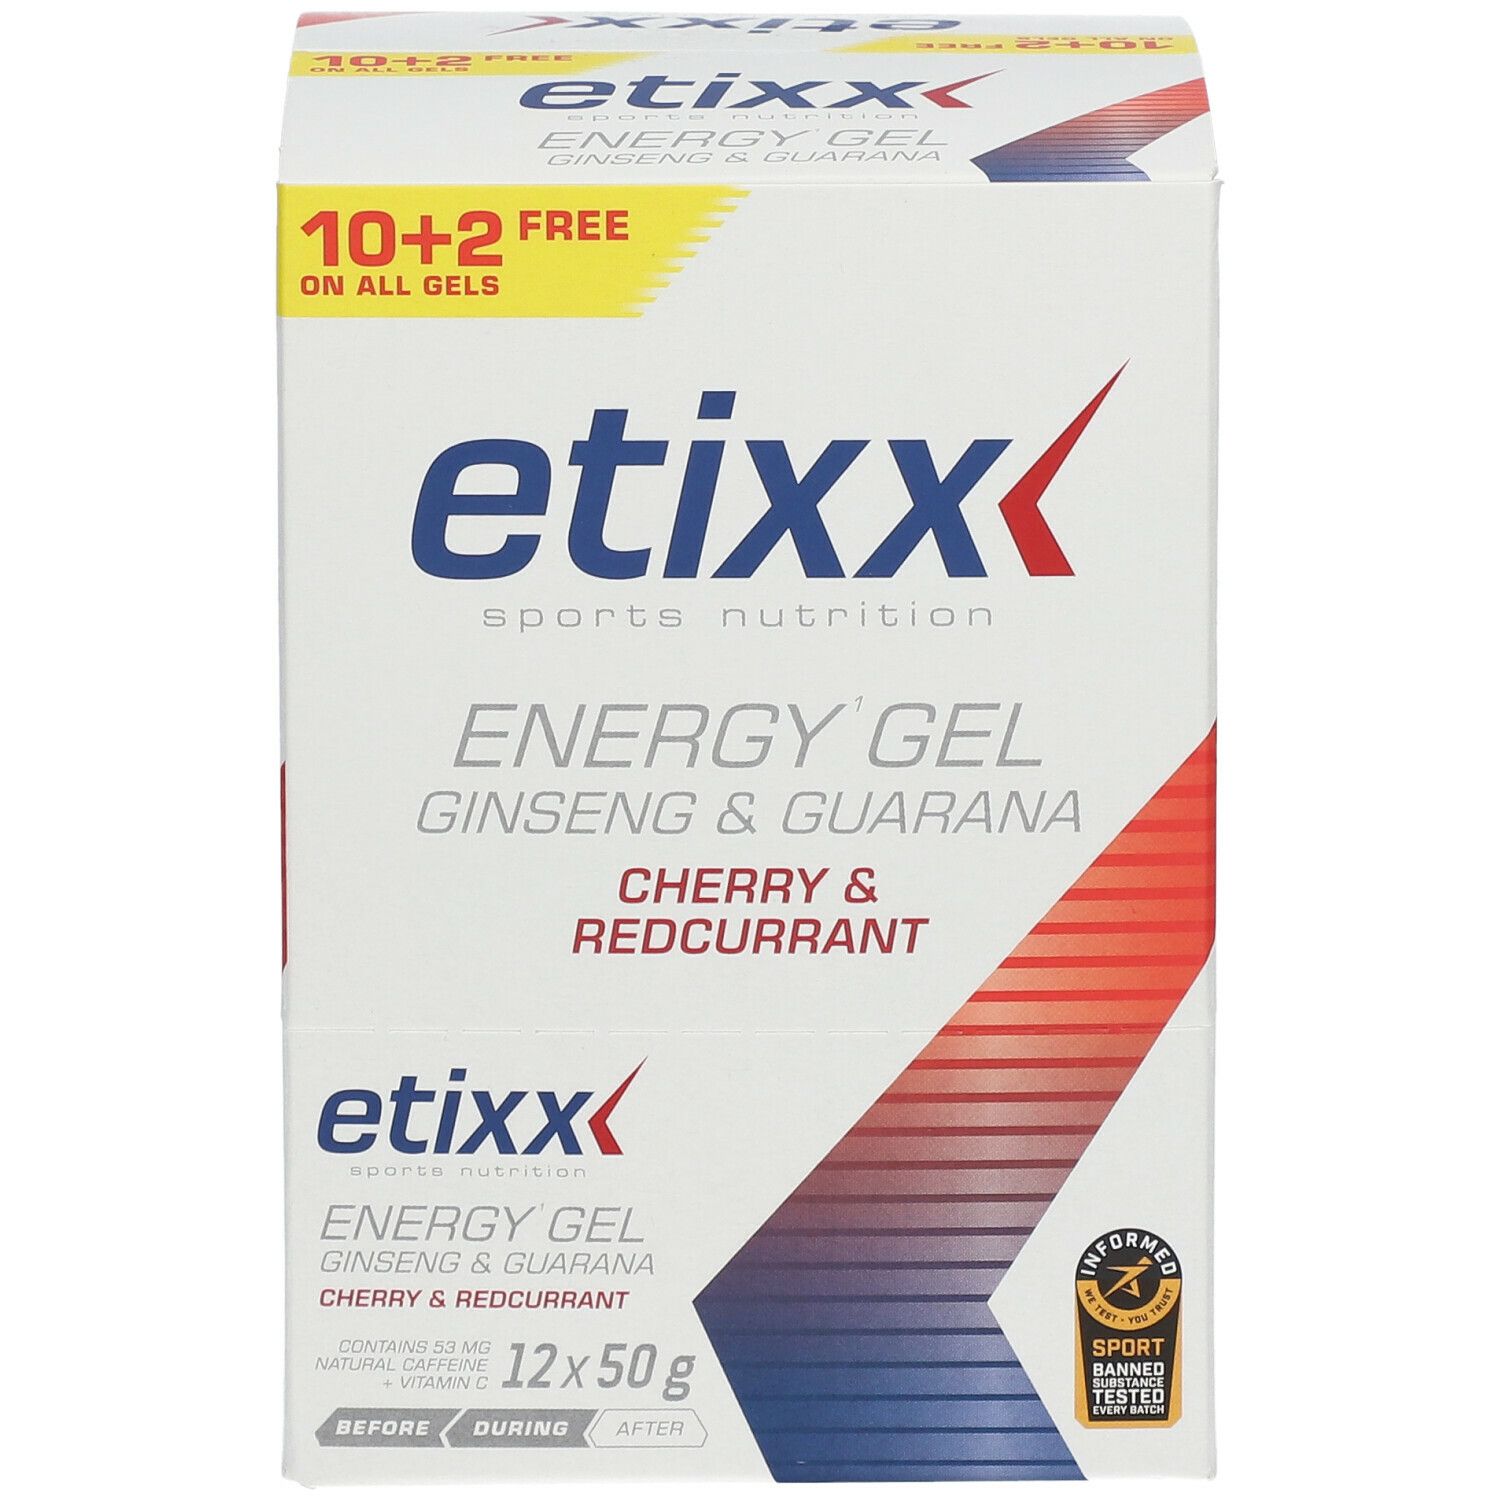 Etixx Ginseng & Guarana Energy Gel